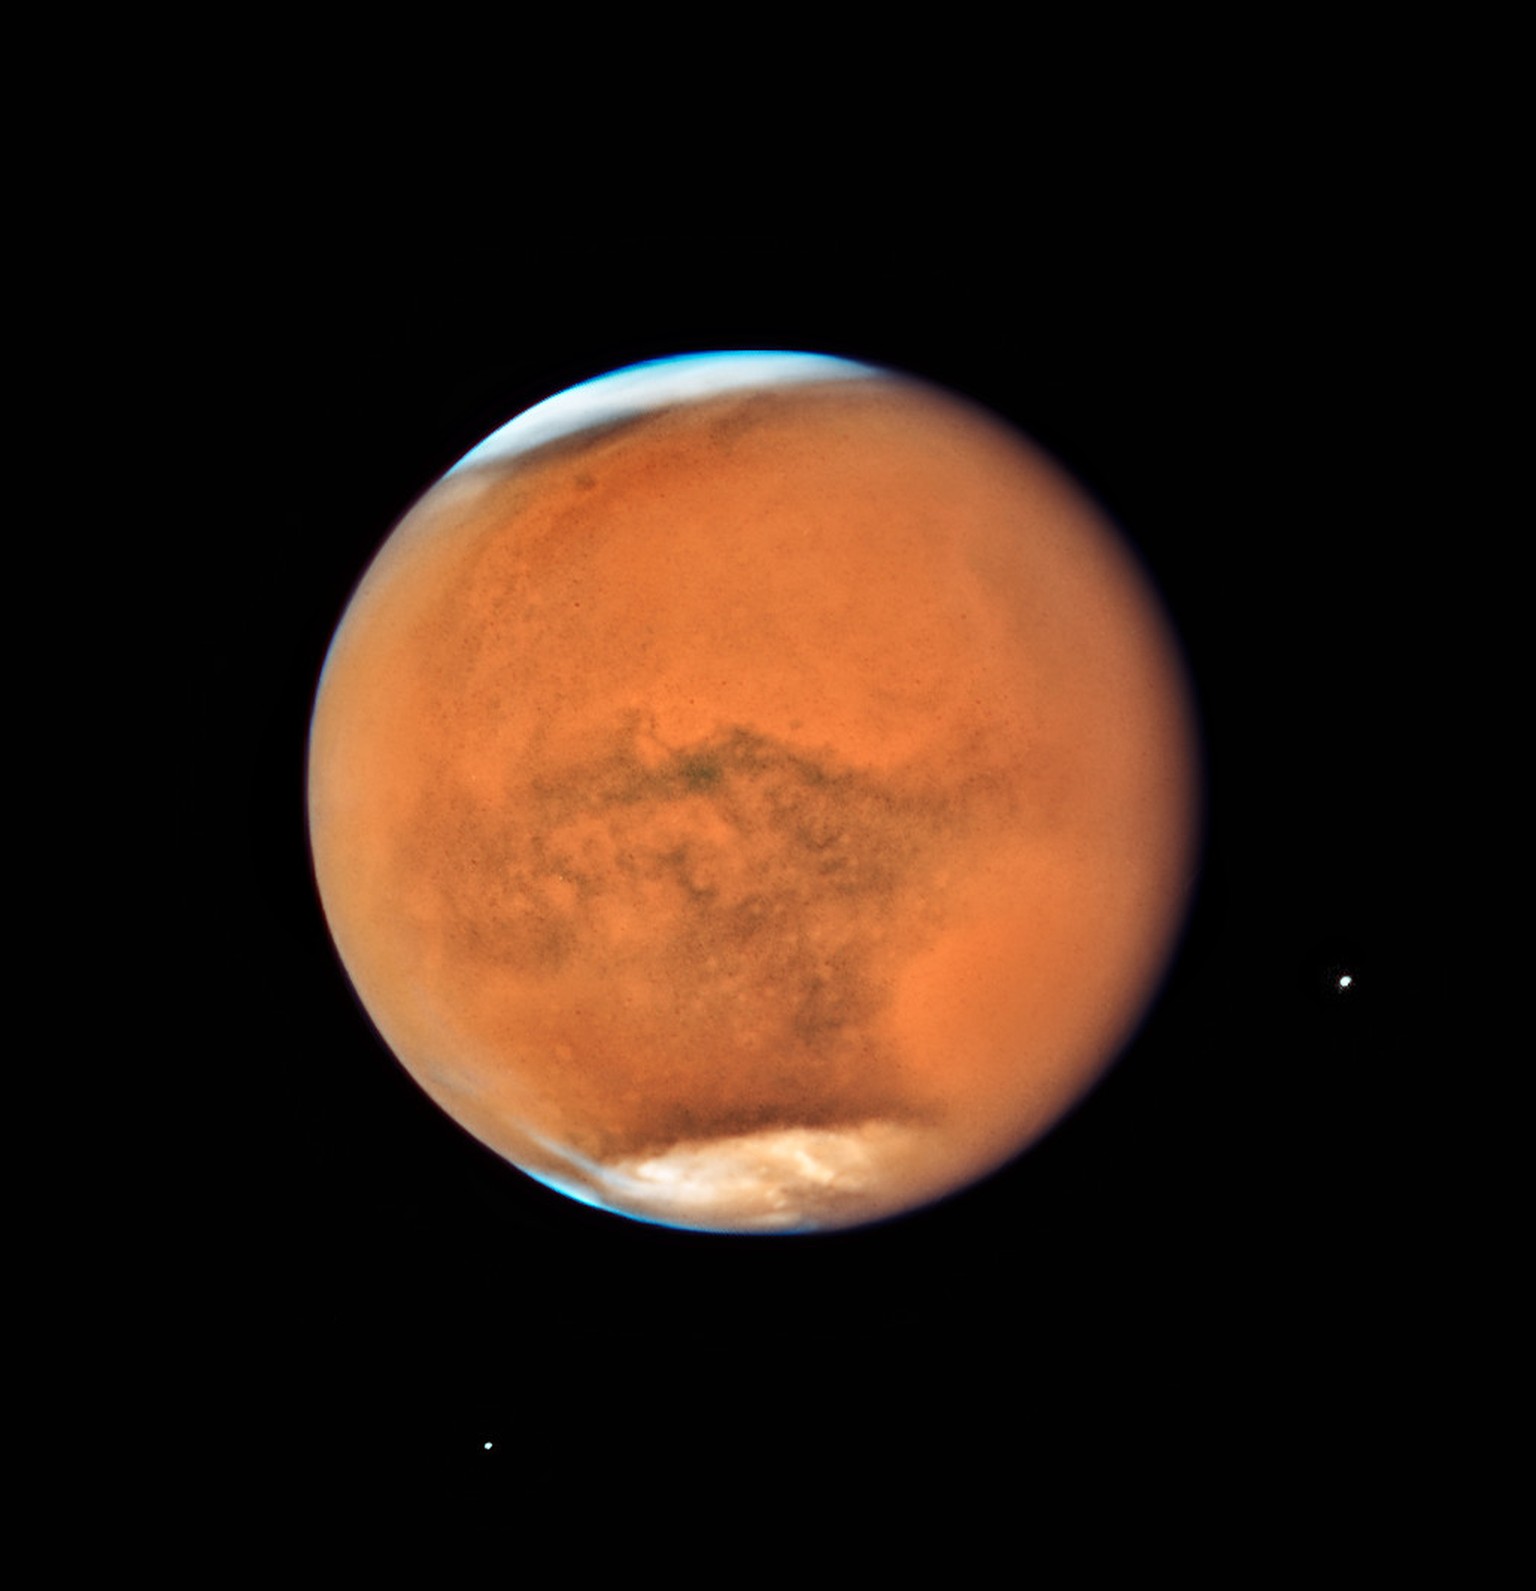 Am 27. Juli 2018 – <a href="https://www.watson.ch/wissen/astronomie/995484141-darum-ist-das-die-laengste-mondfinsternis-die-du-in-deinem-leben-sehen-wirst" target="_blank">fast zeitgleich zur Mondfinsternis</a> – befand sich der ohnehin sehr erdnahe Mars in Opposition zur Sonne, das heisst, die Erde stand zwischen dem Mars und der Sonne. Um den Zeitpunkt der Opposition herum herrschen die besten Bedingungen für die Beobachtung des Roten Planeten – der jetzt noch stets weitgehend vom Sandsturm eingehüllt ist, wie auf dieser Aufnahme.